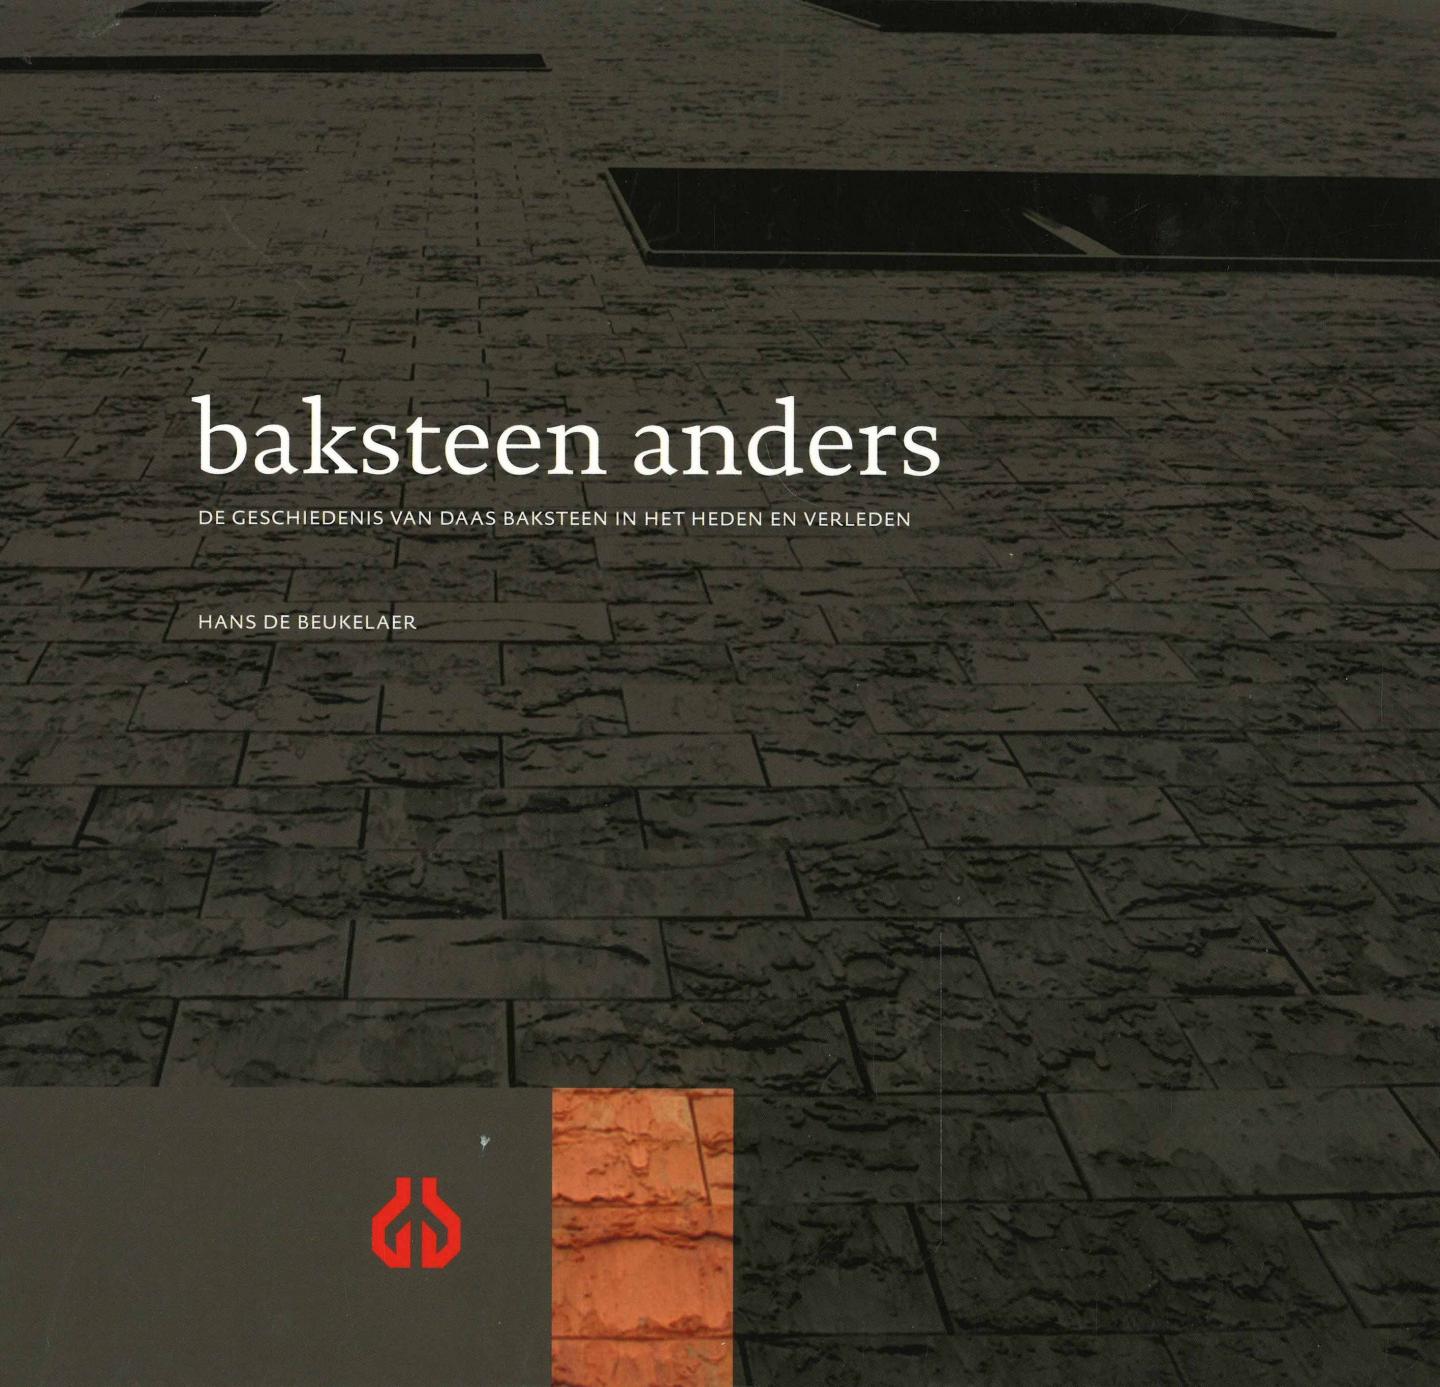 beukelaer, Hans de - Baksteen anders - De geschiedenis van Daas Baksteen in het heden en verleden